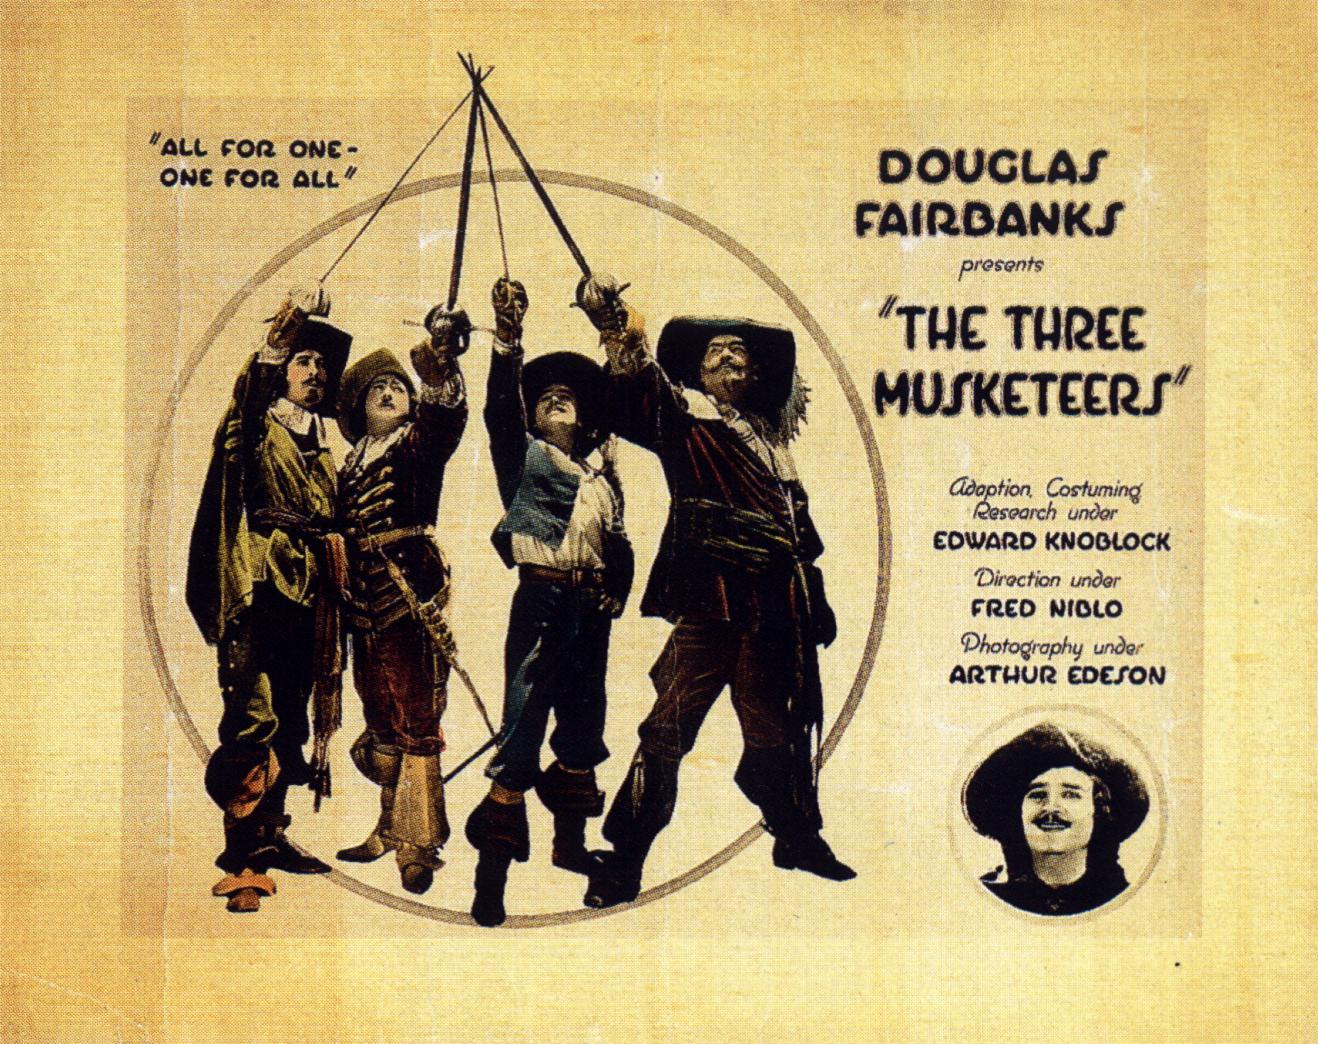 The_three_musketeers_fairbanks